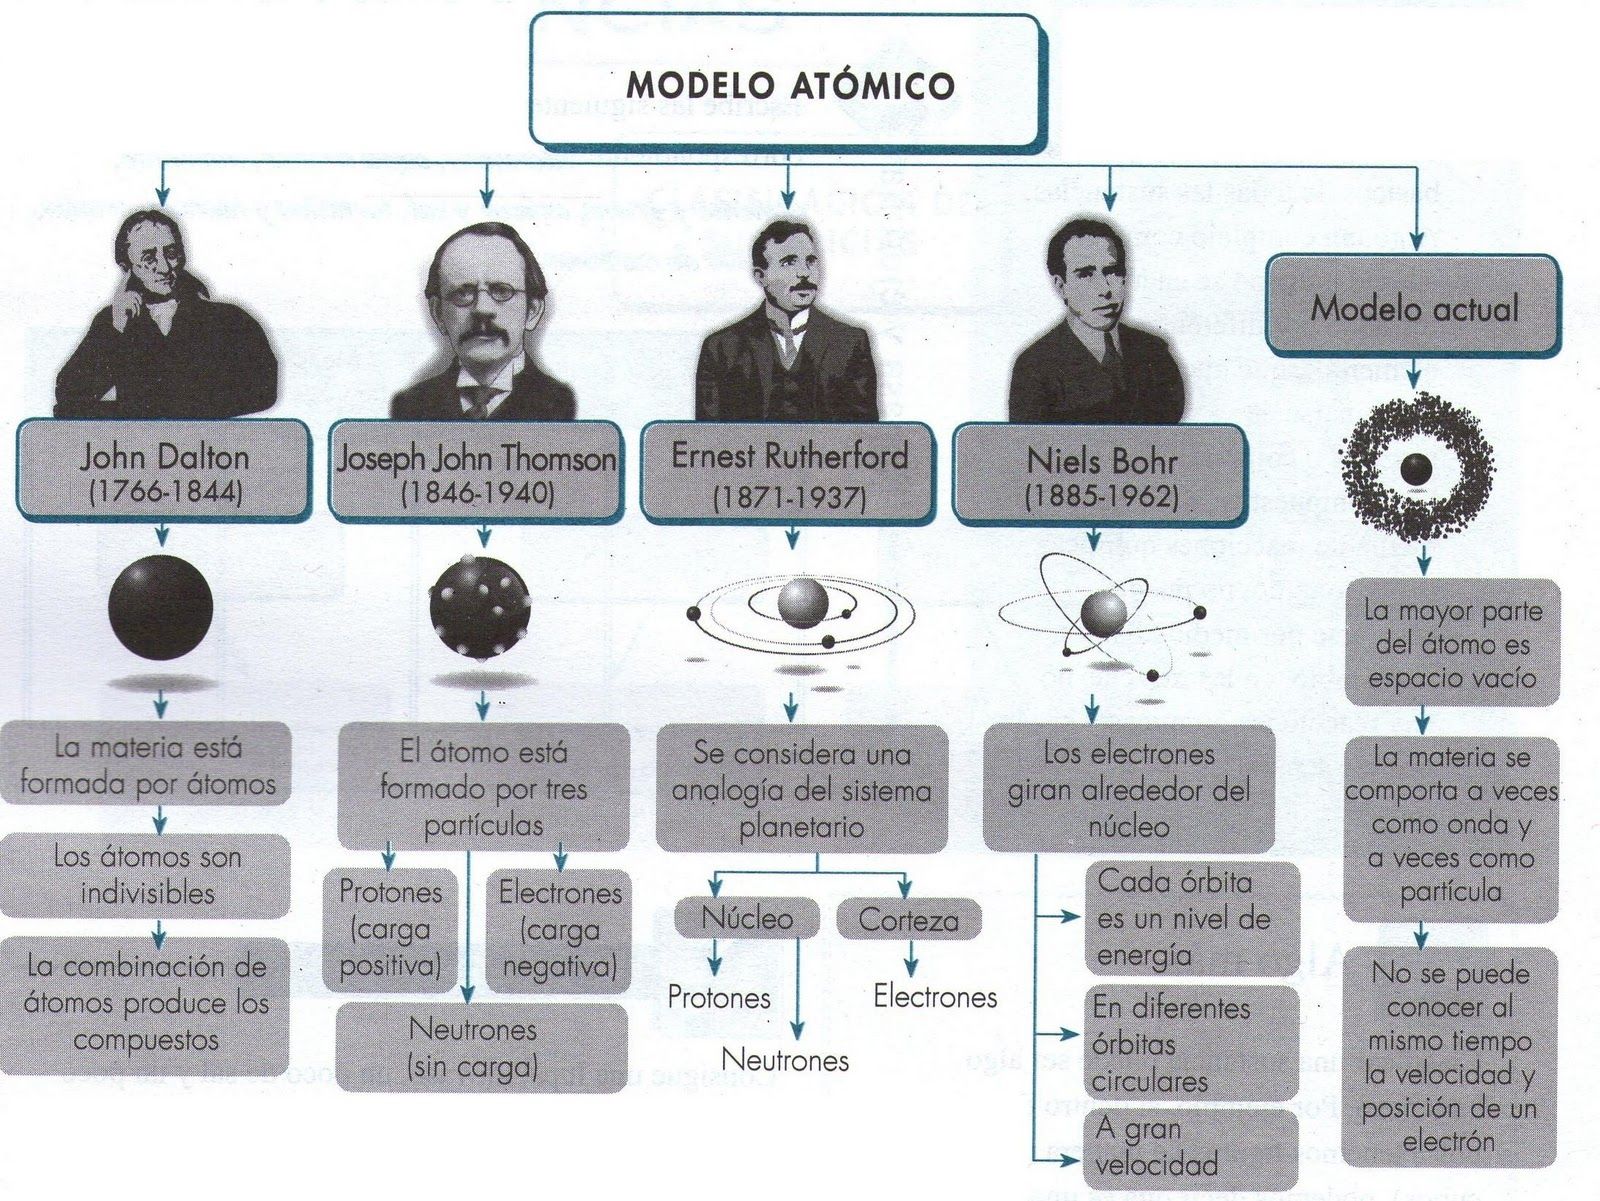 Mapa conceptual modelos atomicos